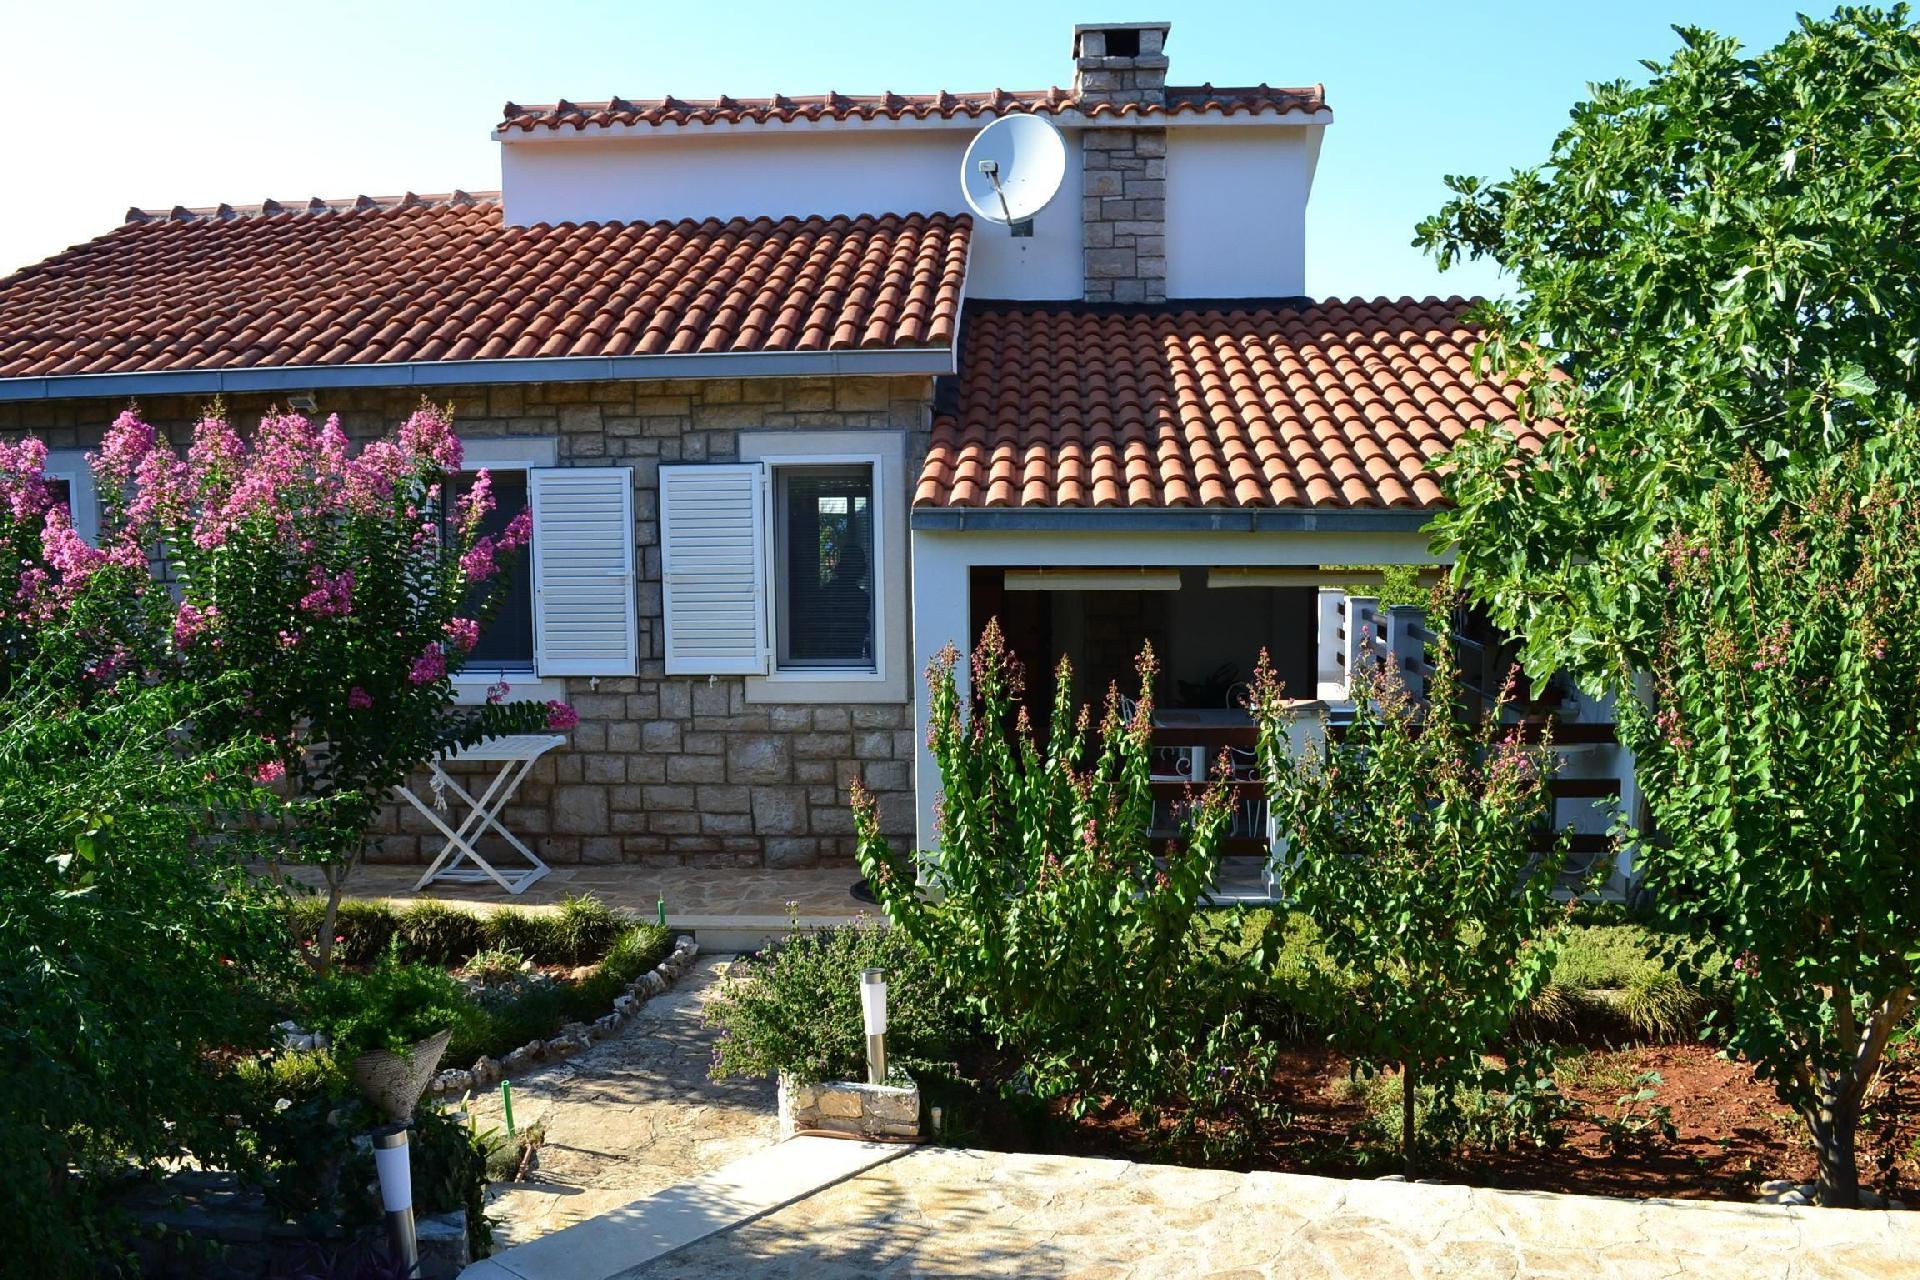 Barrierefreie Ferienwohnung mit zwei Terrassen, in Ferienhaus in Europa